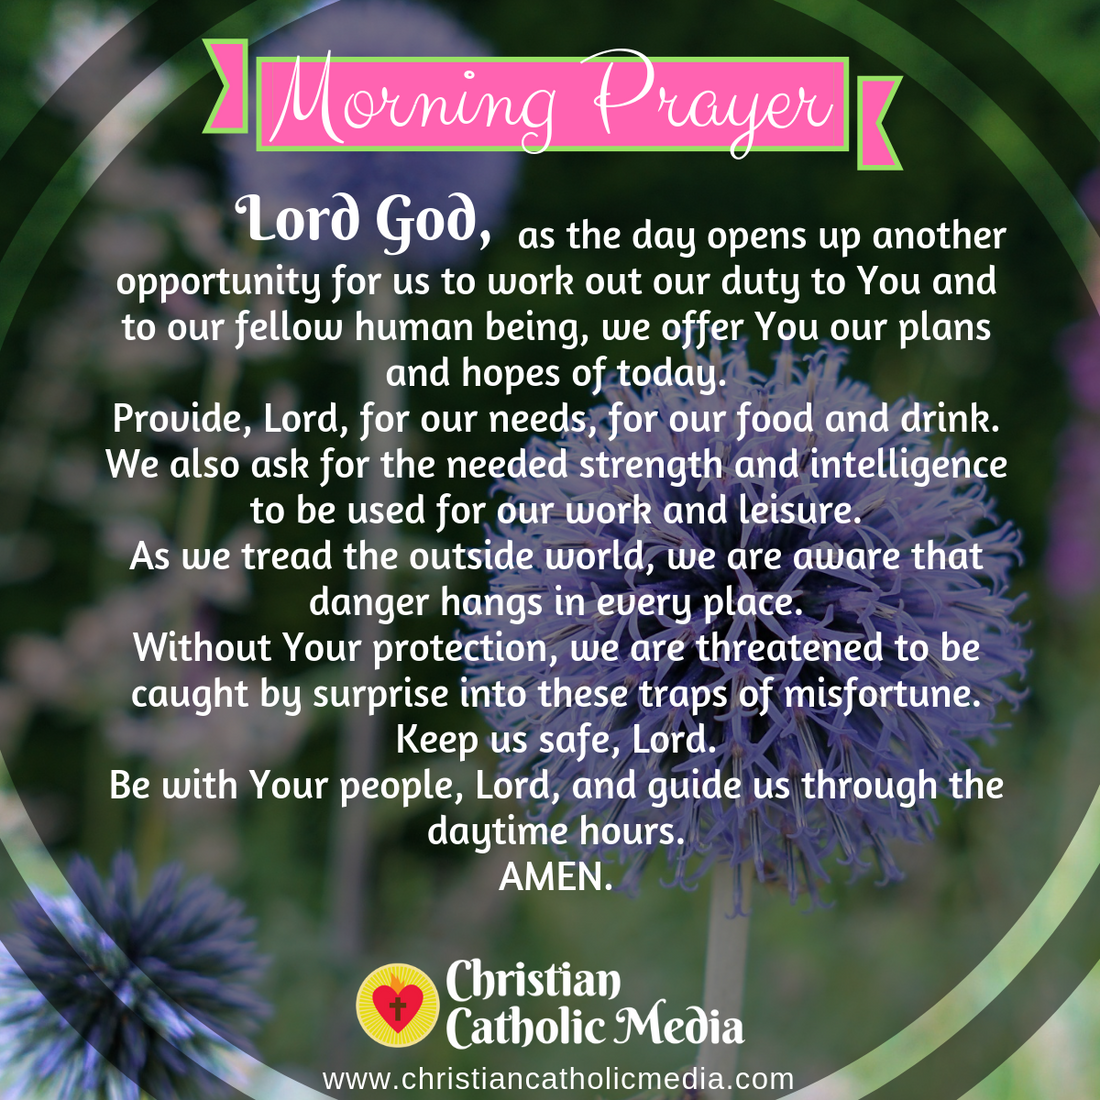 Morning Prayer Catholic Tuesday 4-28-2020